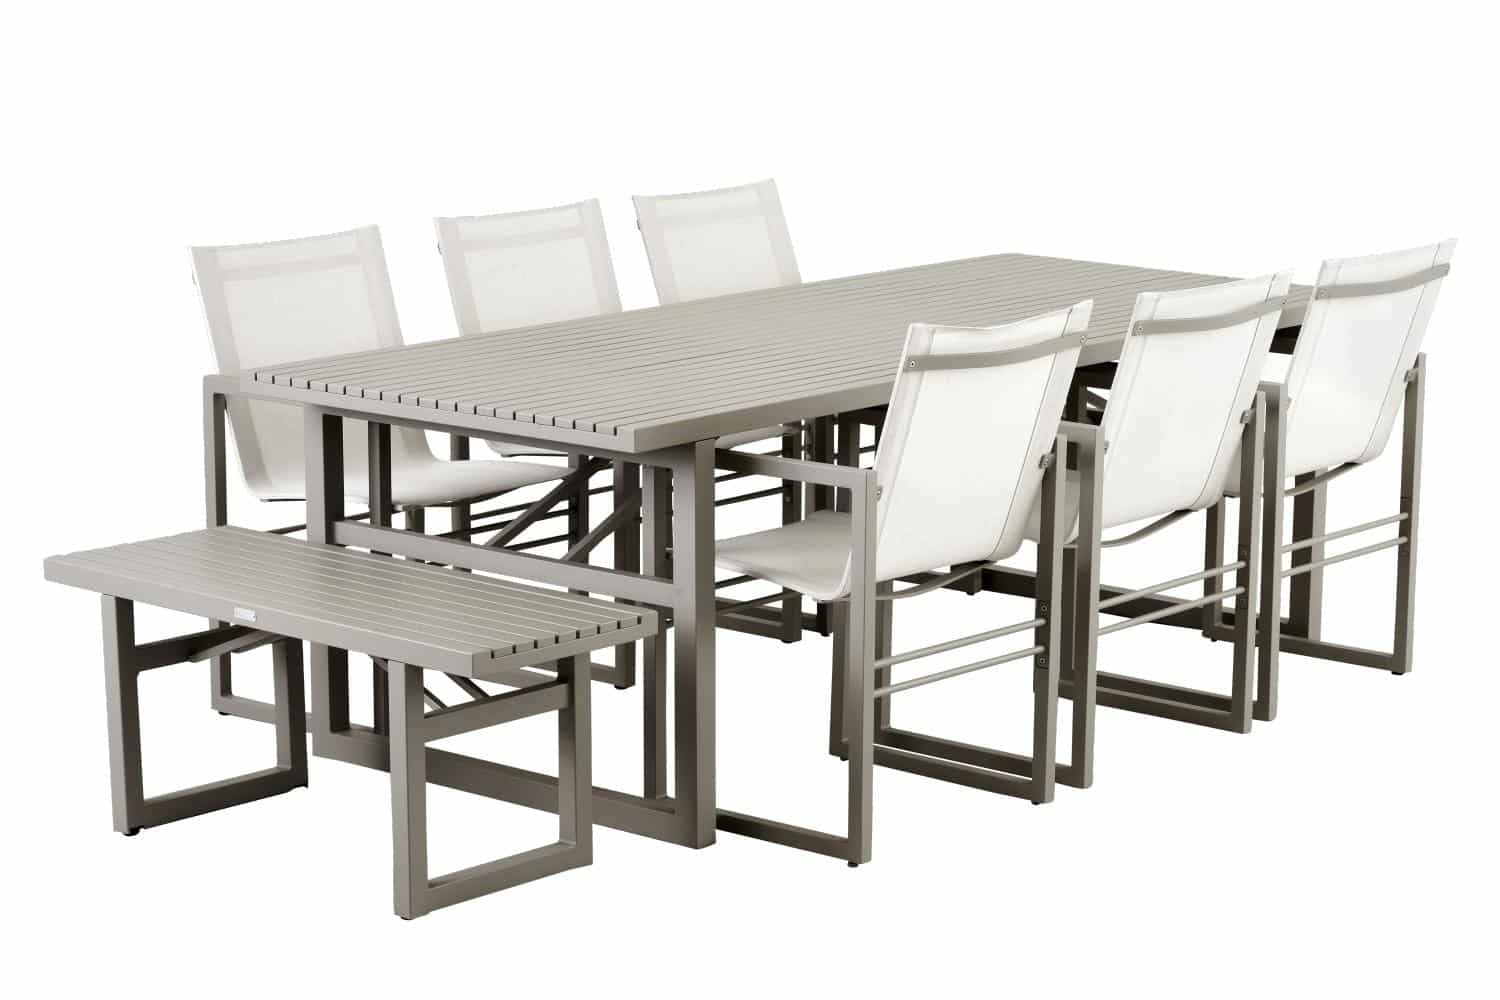 Brafab Vevi Matbord khaki är ett matbord 230×95 cm tillverkat i beige/khakifärgad underhållsfri aluminium. Med 6 st Vevi matstolar beige och Vevi bänk.